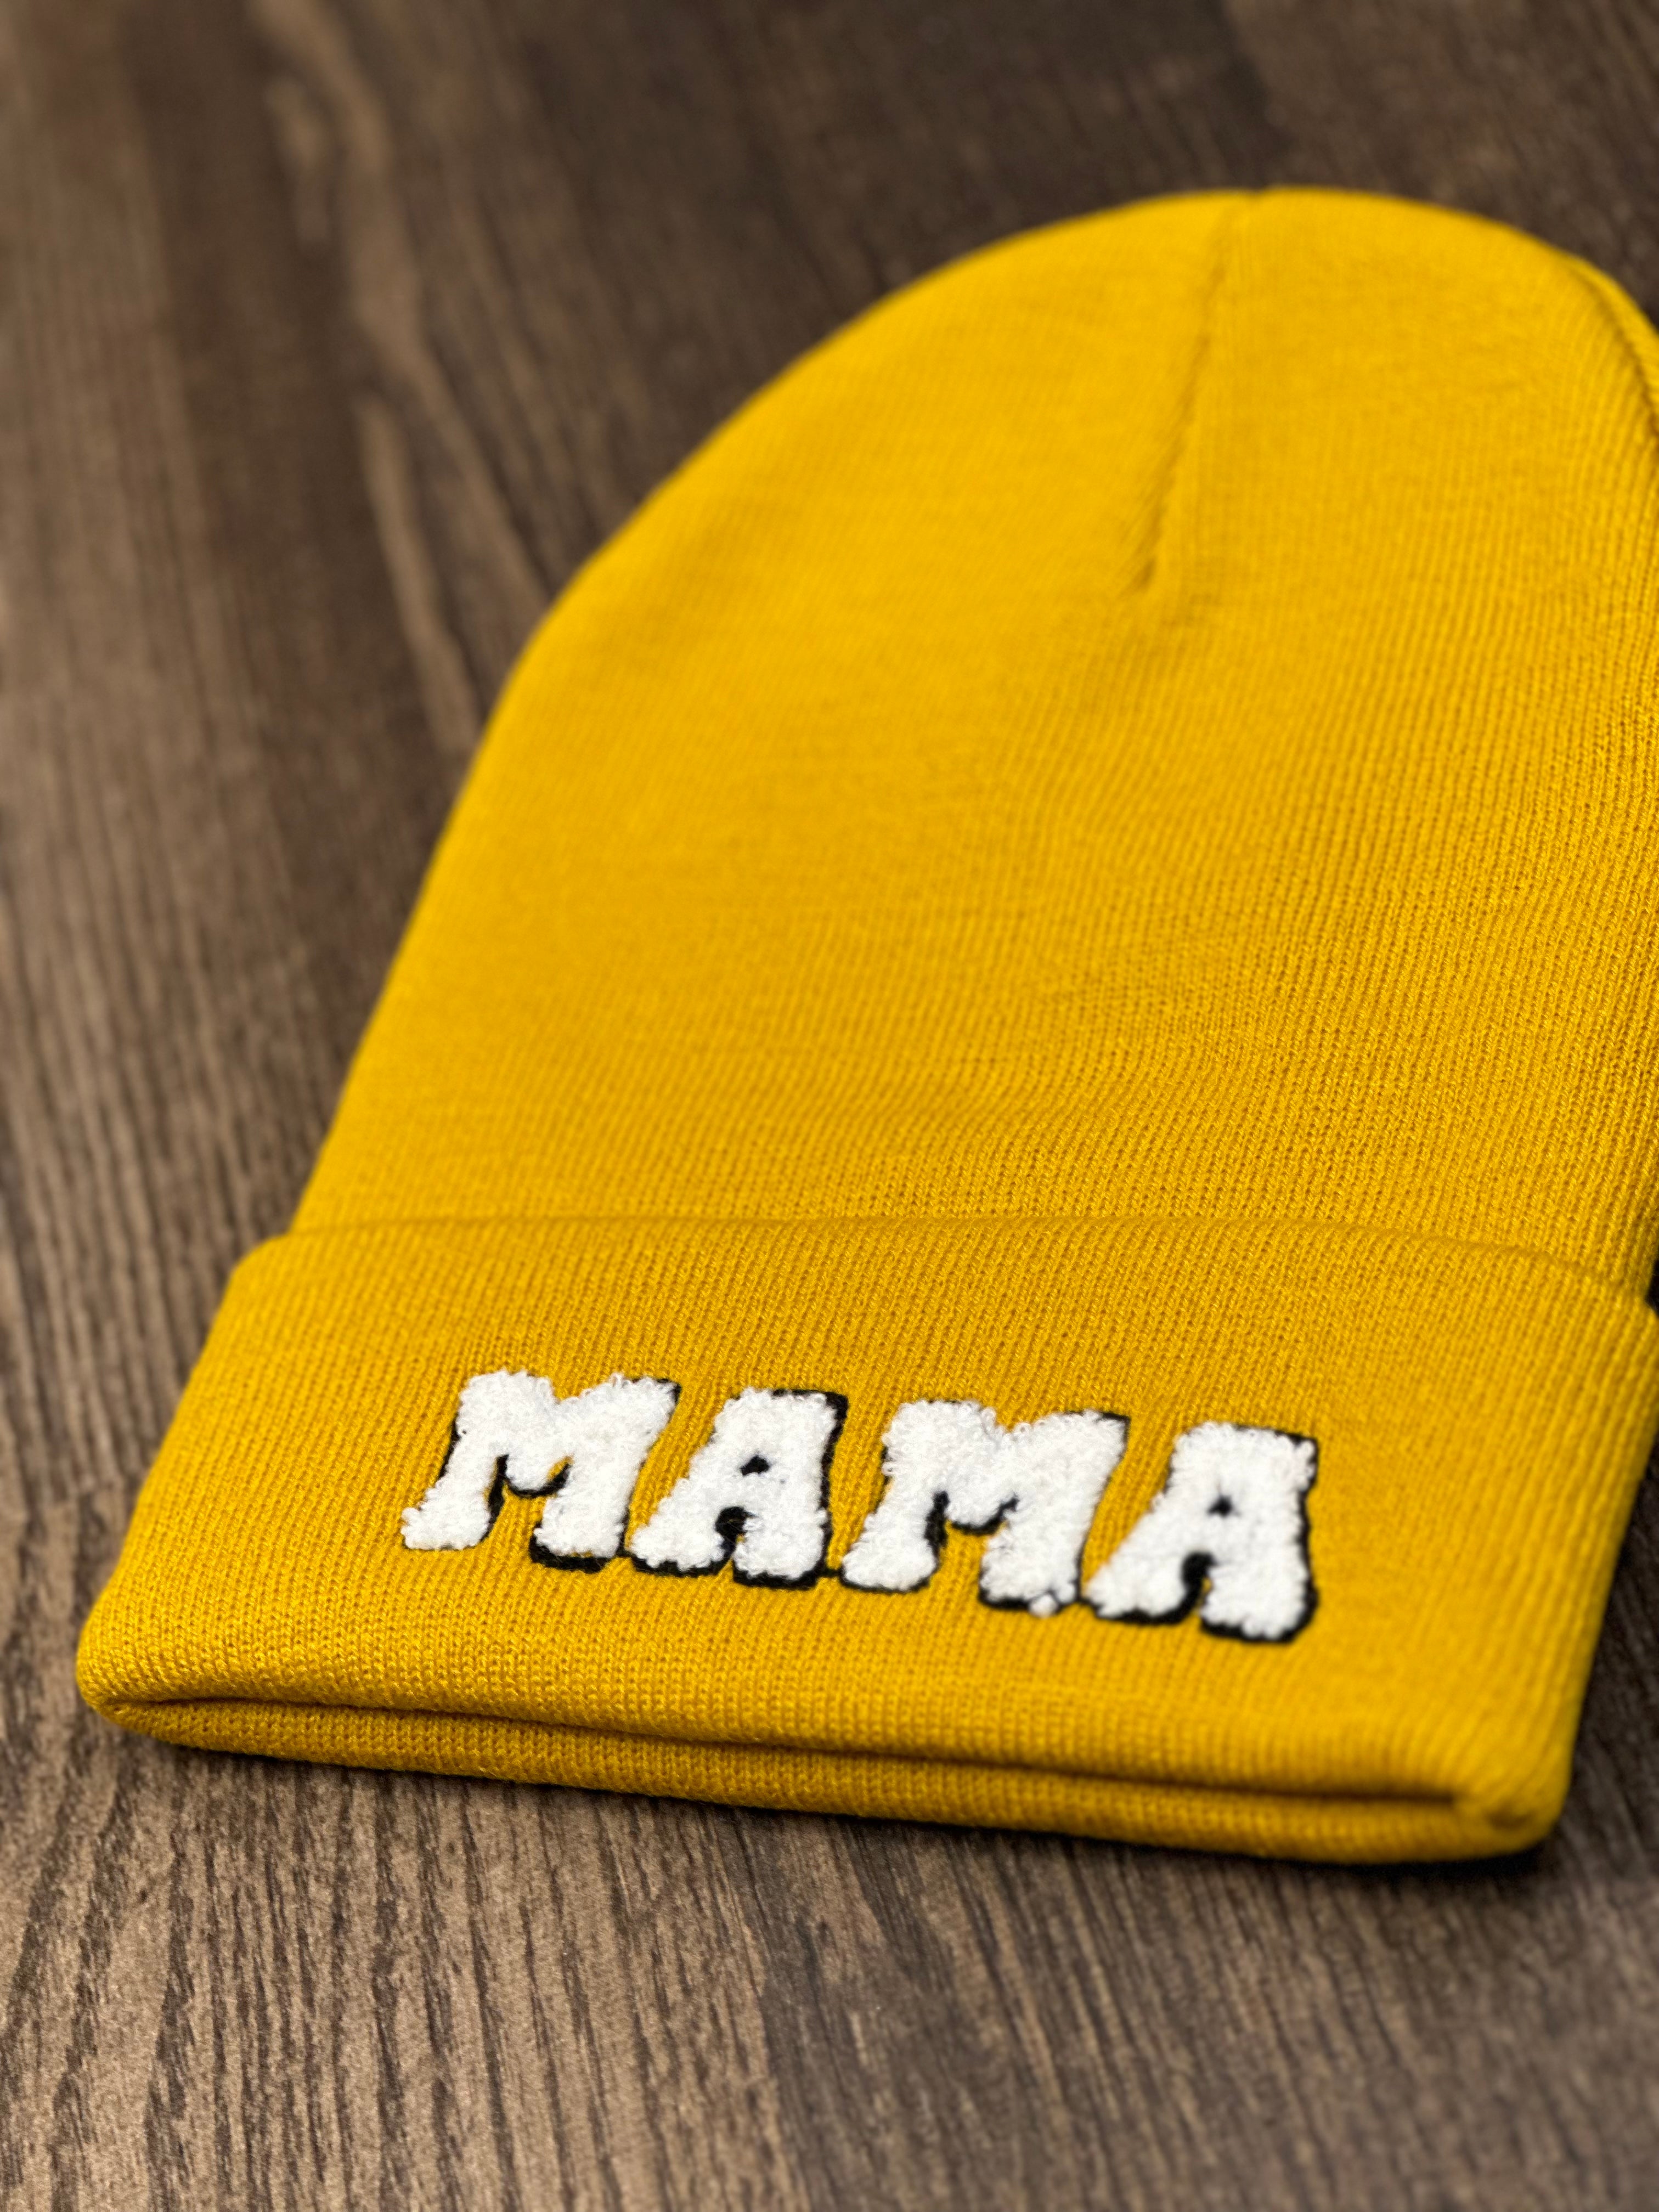 MAMA hat